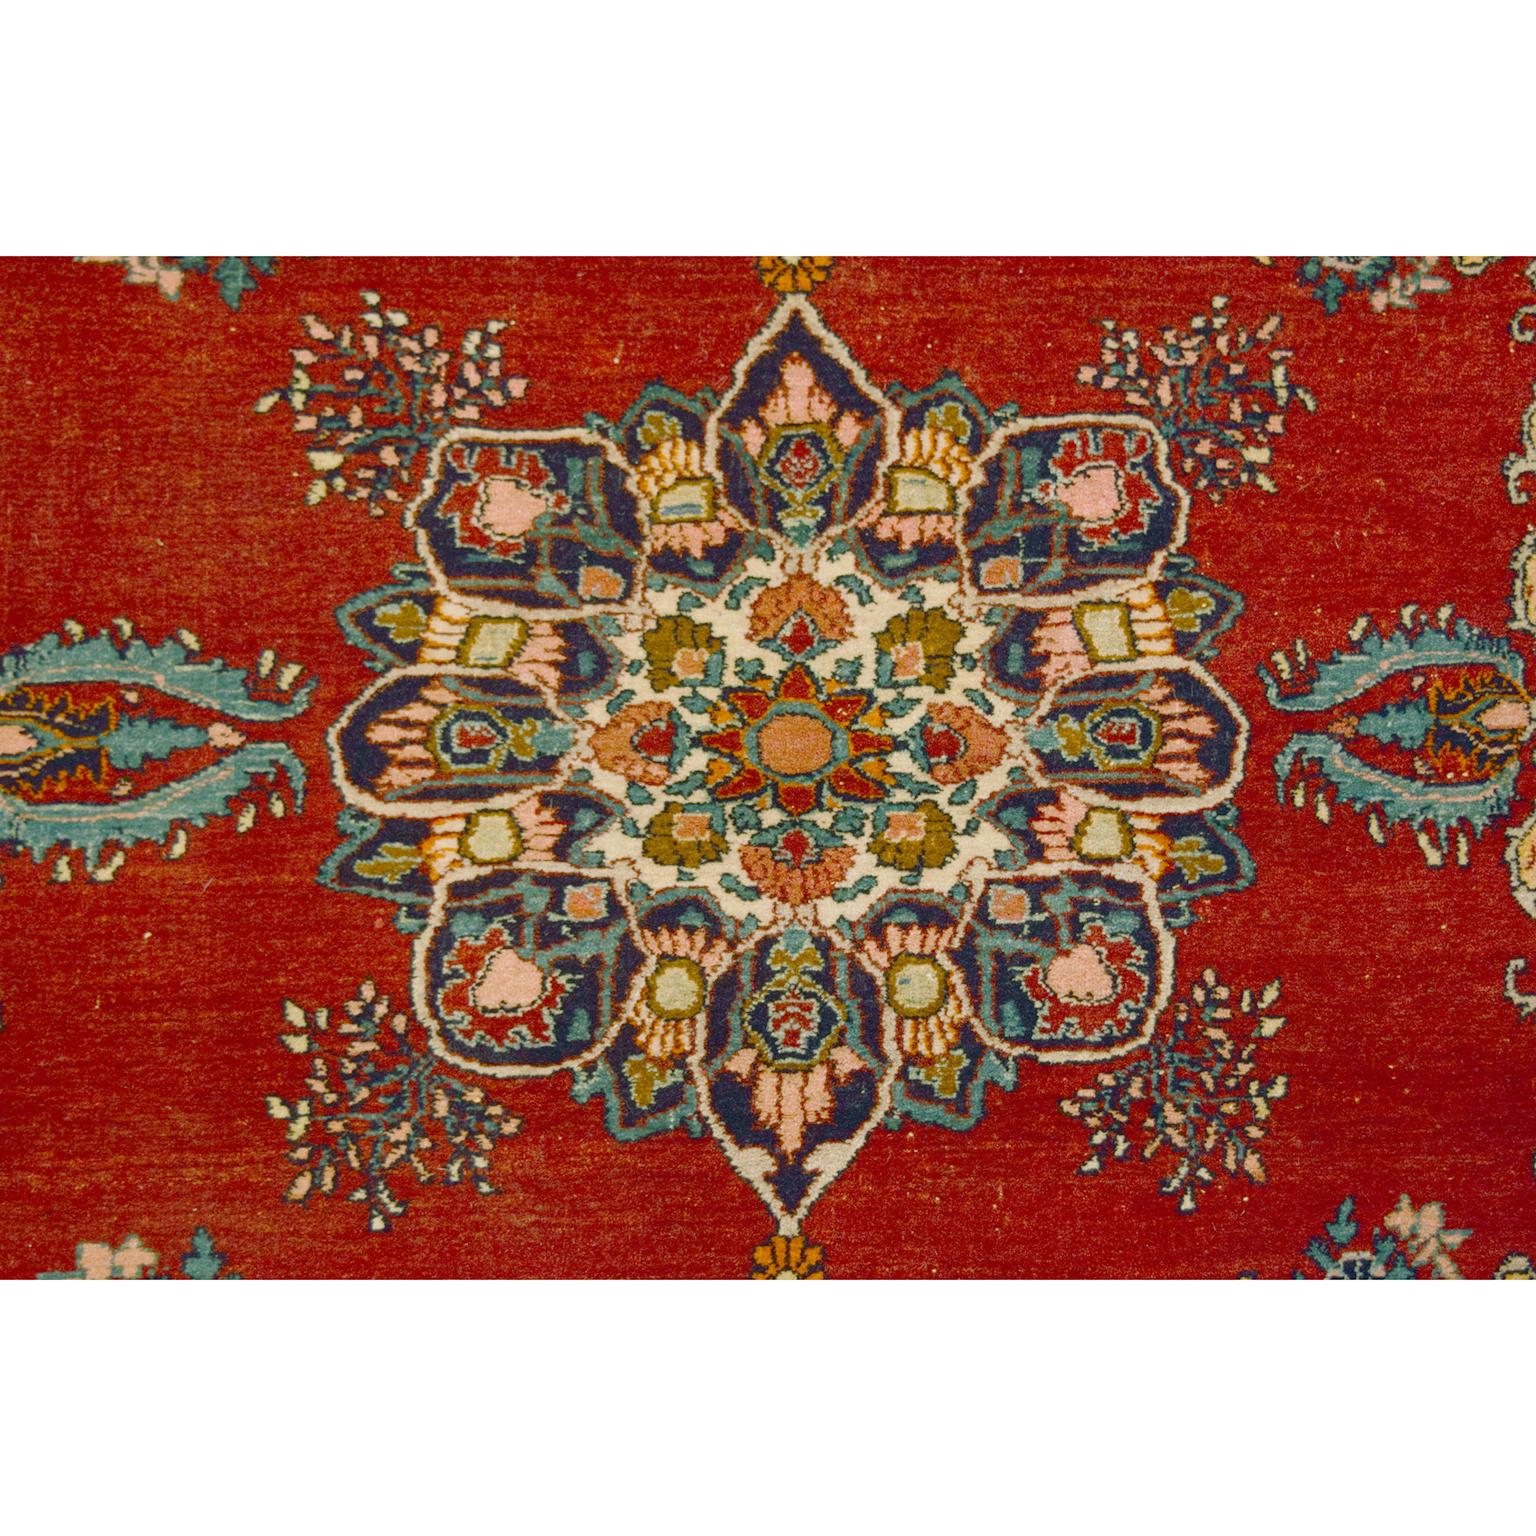 Ce tapis antique persan Bidjar de couleur rouge avec des accents bleus et or mesure approximativement 4' x 6'. Pour réaliser ce tapis, le tisserand a utilisé la technique traditionnelle persane de tissage par nouage à la main. Ces pratiques